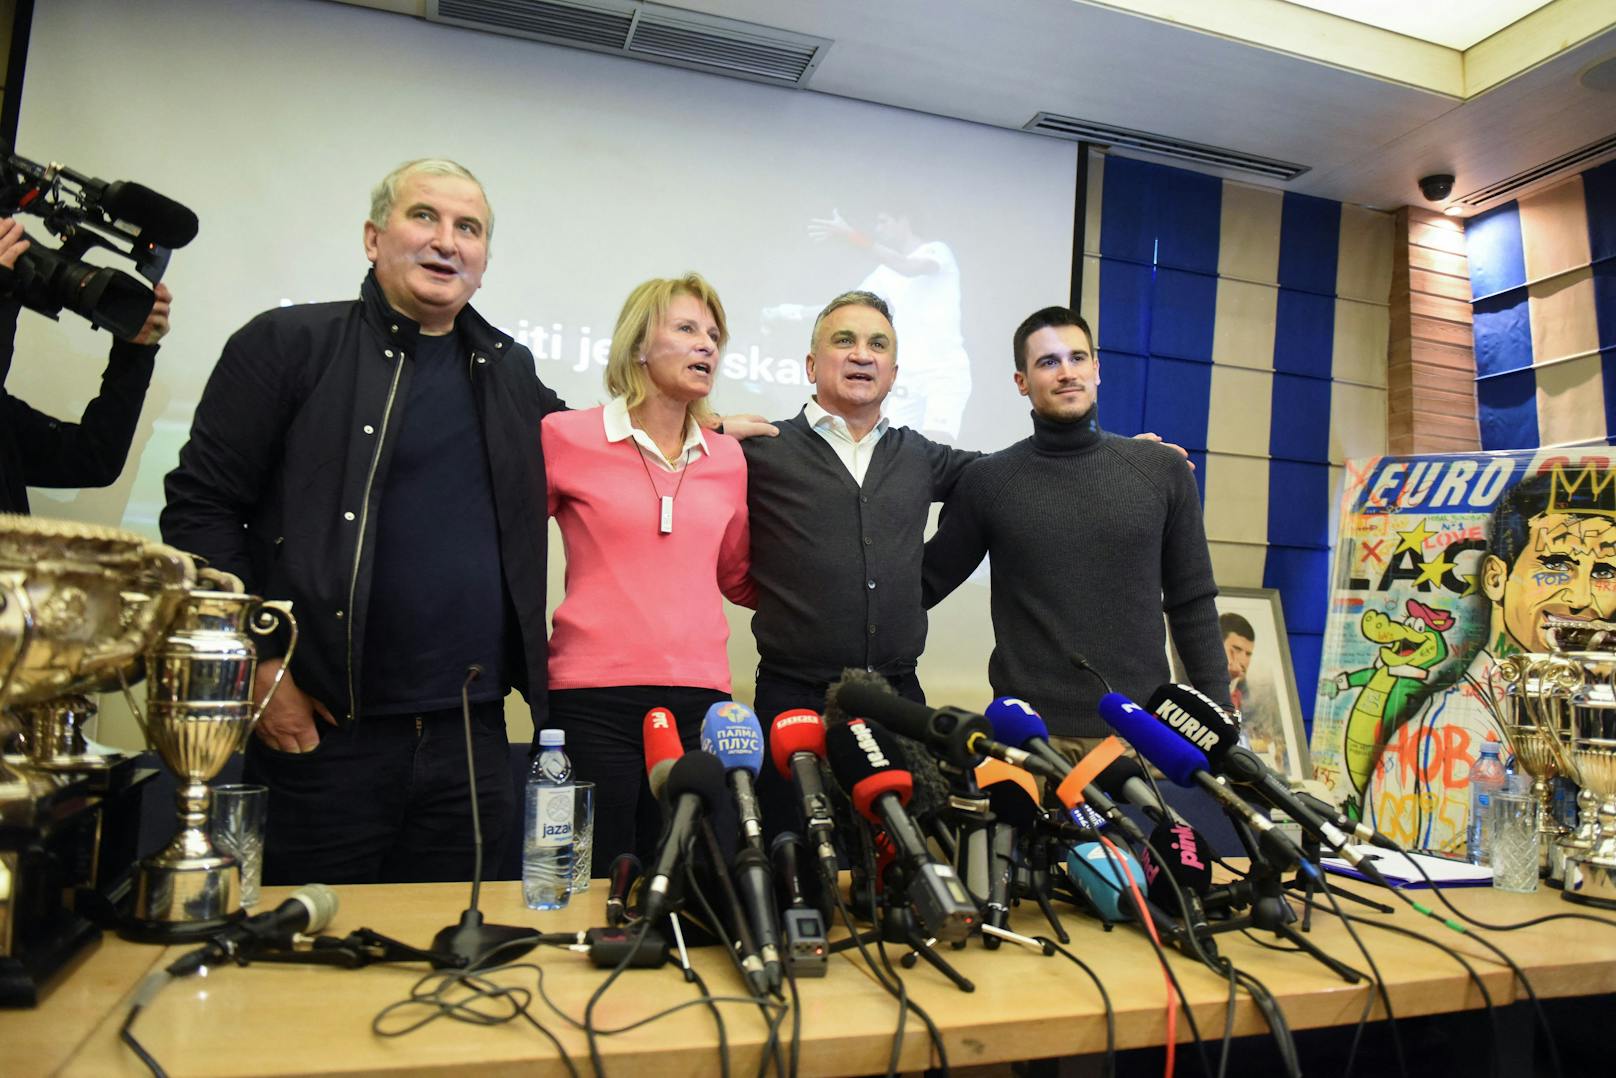 Indes gibt die Familie Djokovic in Serbien eine Pressekonferenz, sagt über den Sieg vor Gericht, es wäre der größte Karriereerfolg des Tennis-Stars gewesen. Bei der ersten kritischen Frage wird die bizarre Show abgebrochen.